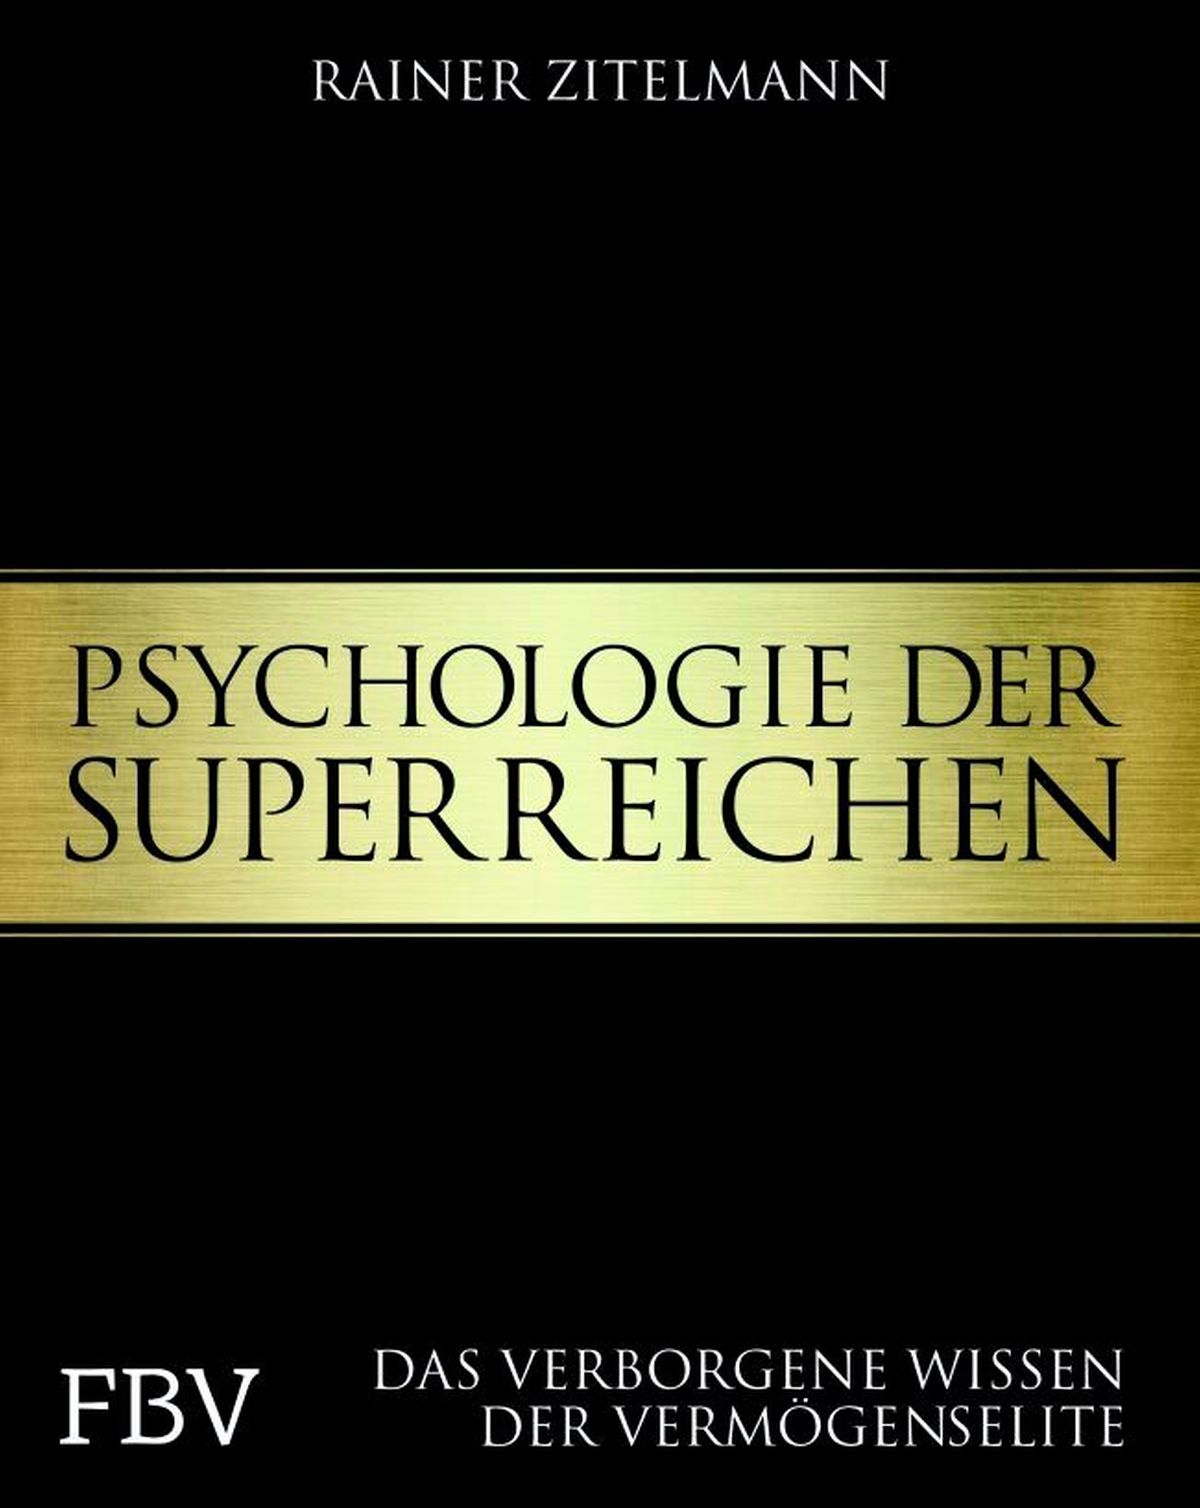 Psychologie der Superreichen: Wir verlosen 5 Exemplare des Buches!